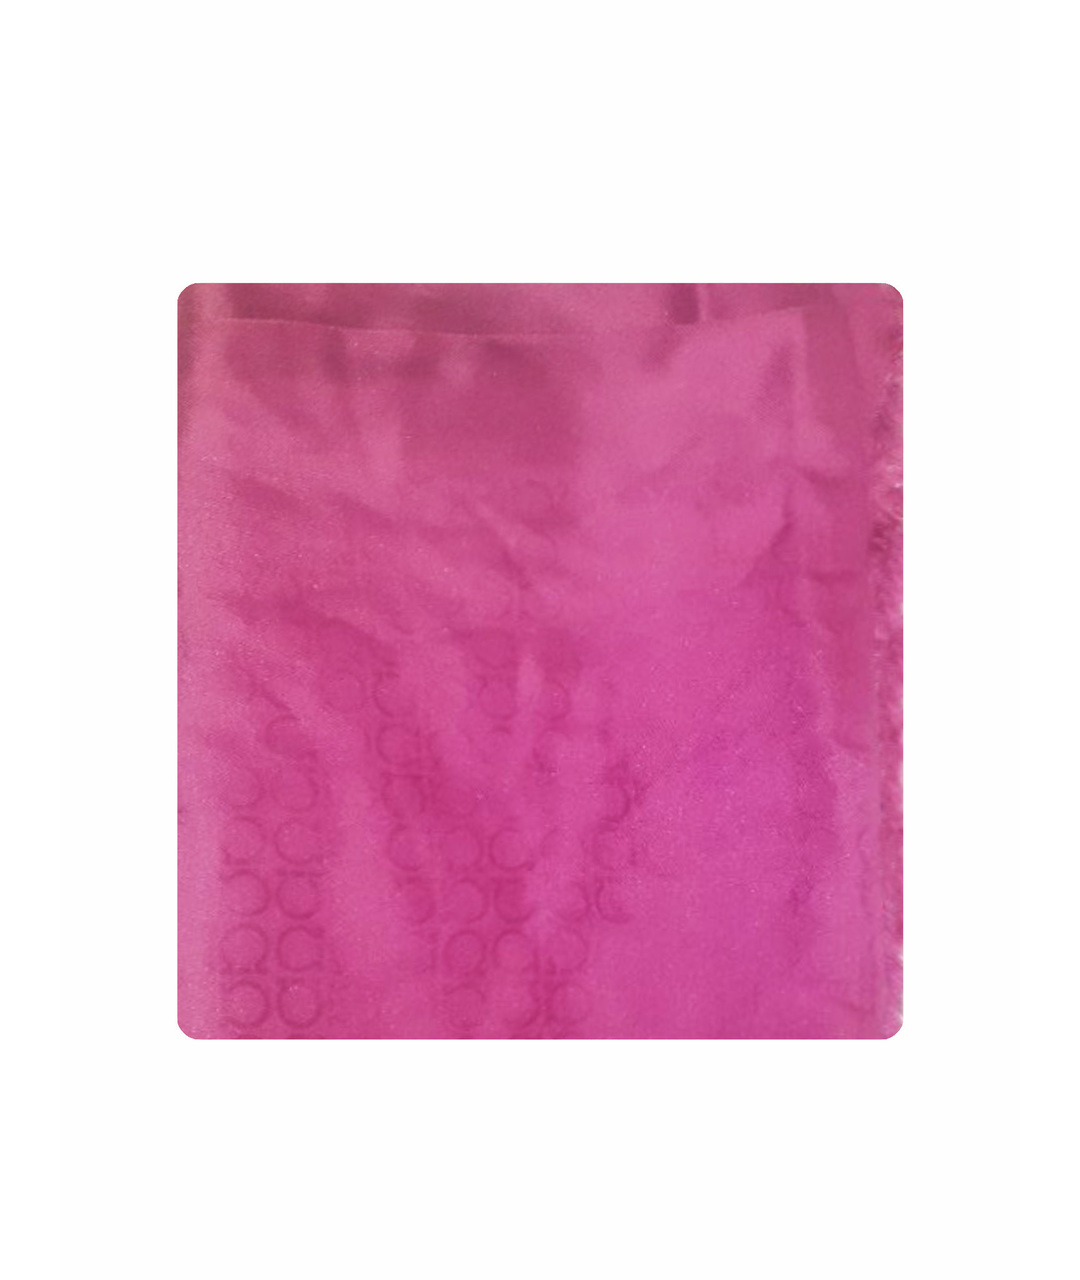 SALVATORE FERRAGAMO Розовый шелковый шарф, фото 1